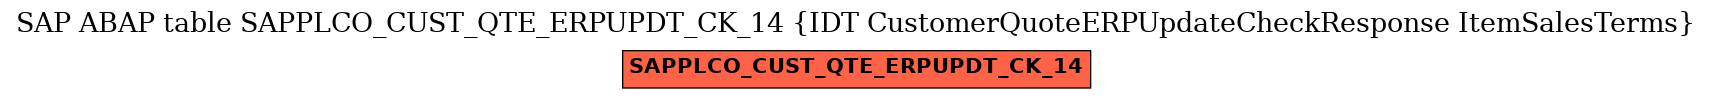 E-R Diagram for table SAPPLCO_CUST_QTE_ERPUPDT_CK_14 (IDT CustomerQuoteERPUpdateCheckResponse ItemSalesTerms)